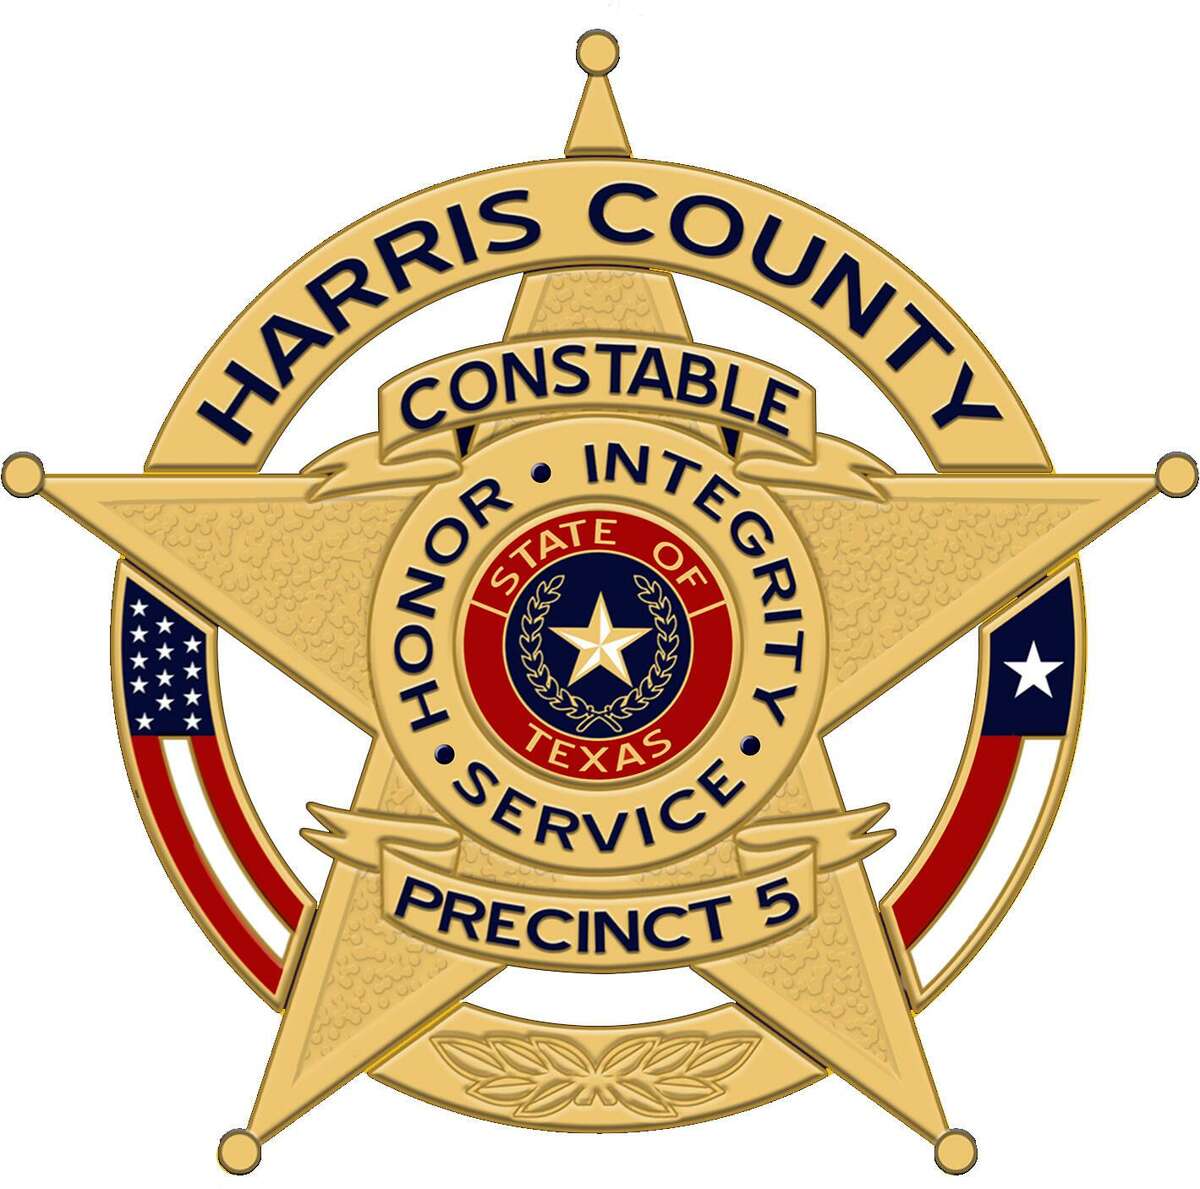 Harris County Precinct 5 Constable